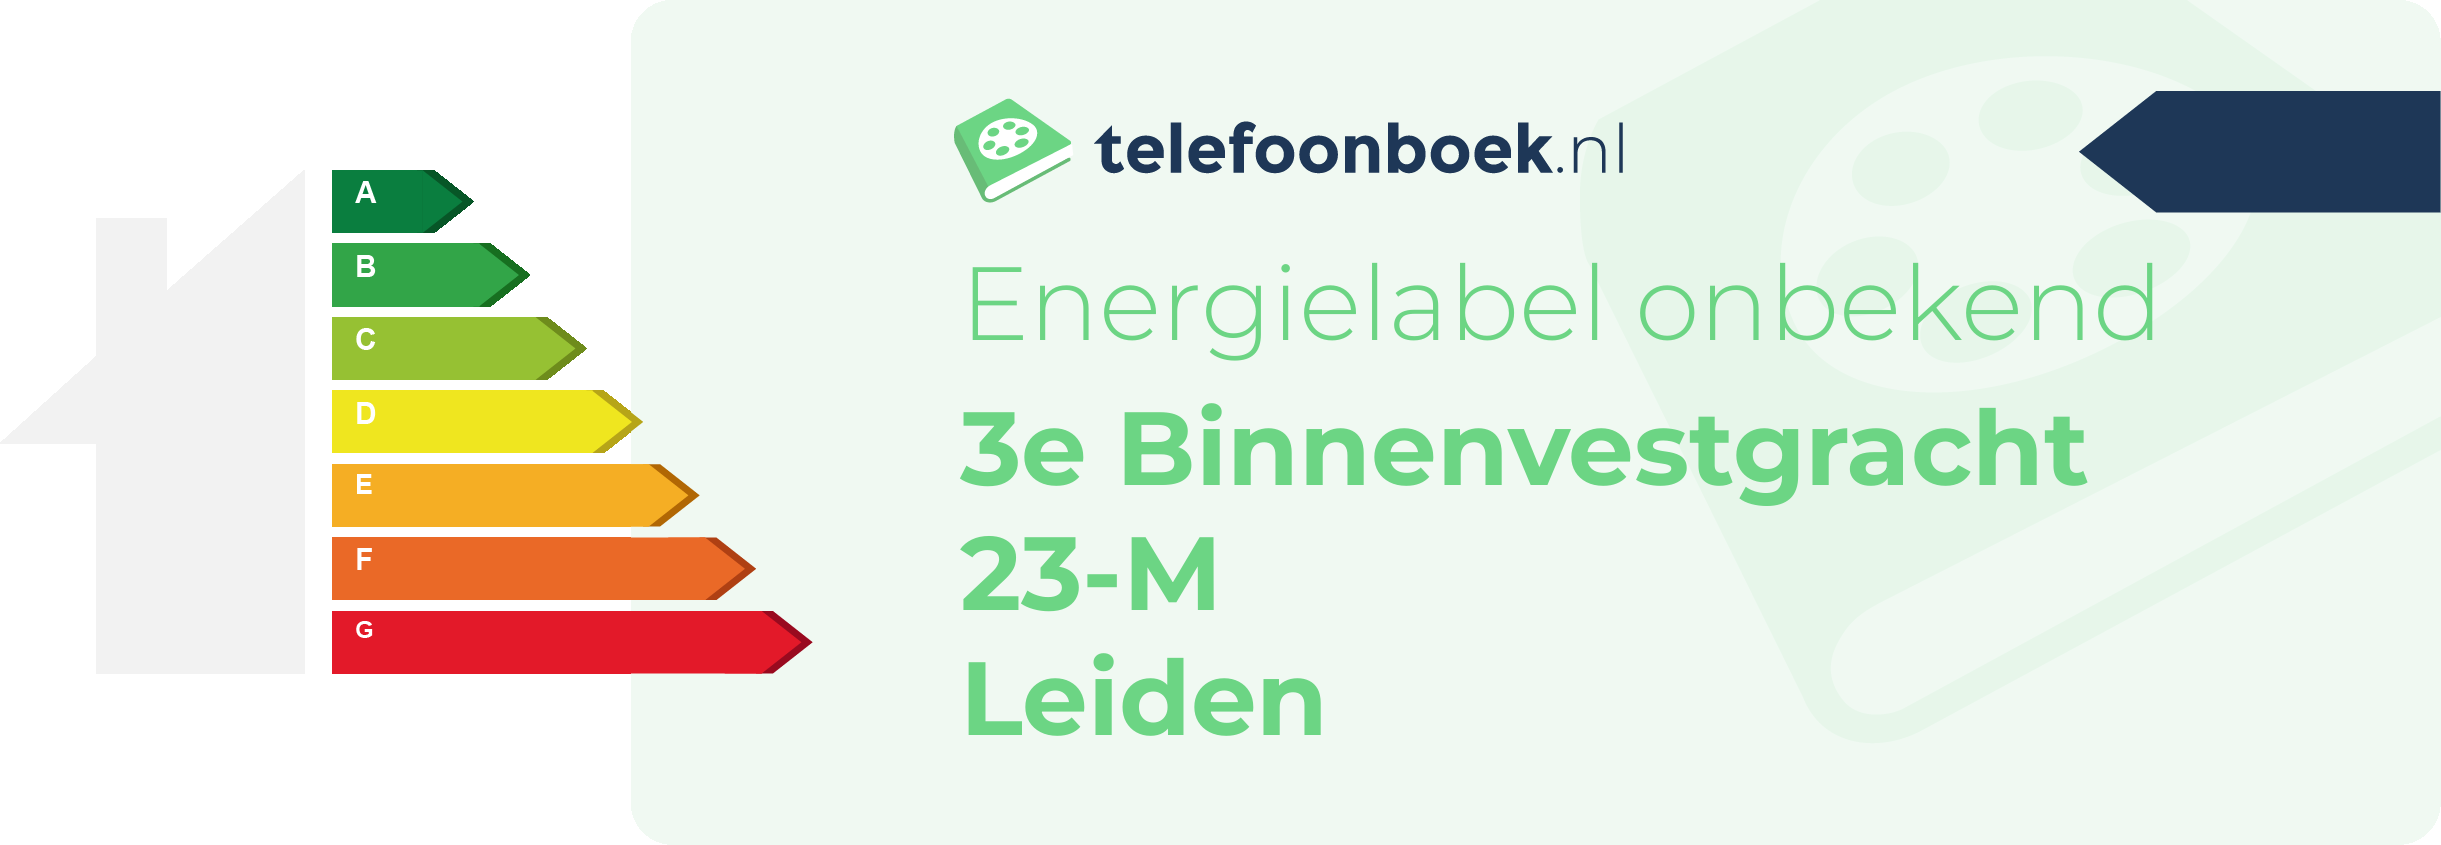 Energielabel 3e Binnenvestgracht 23-M Leiden